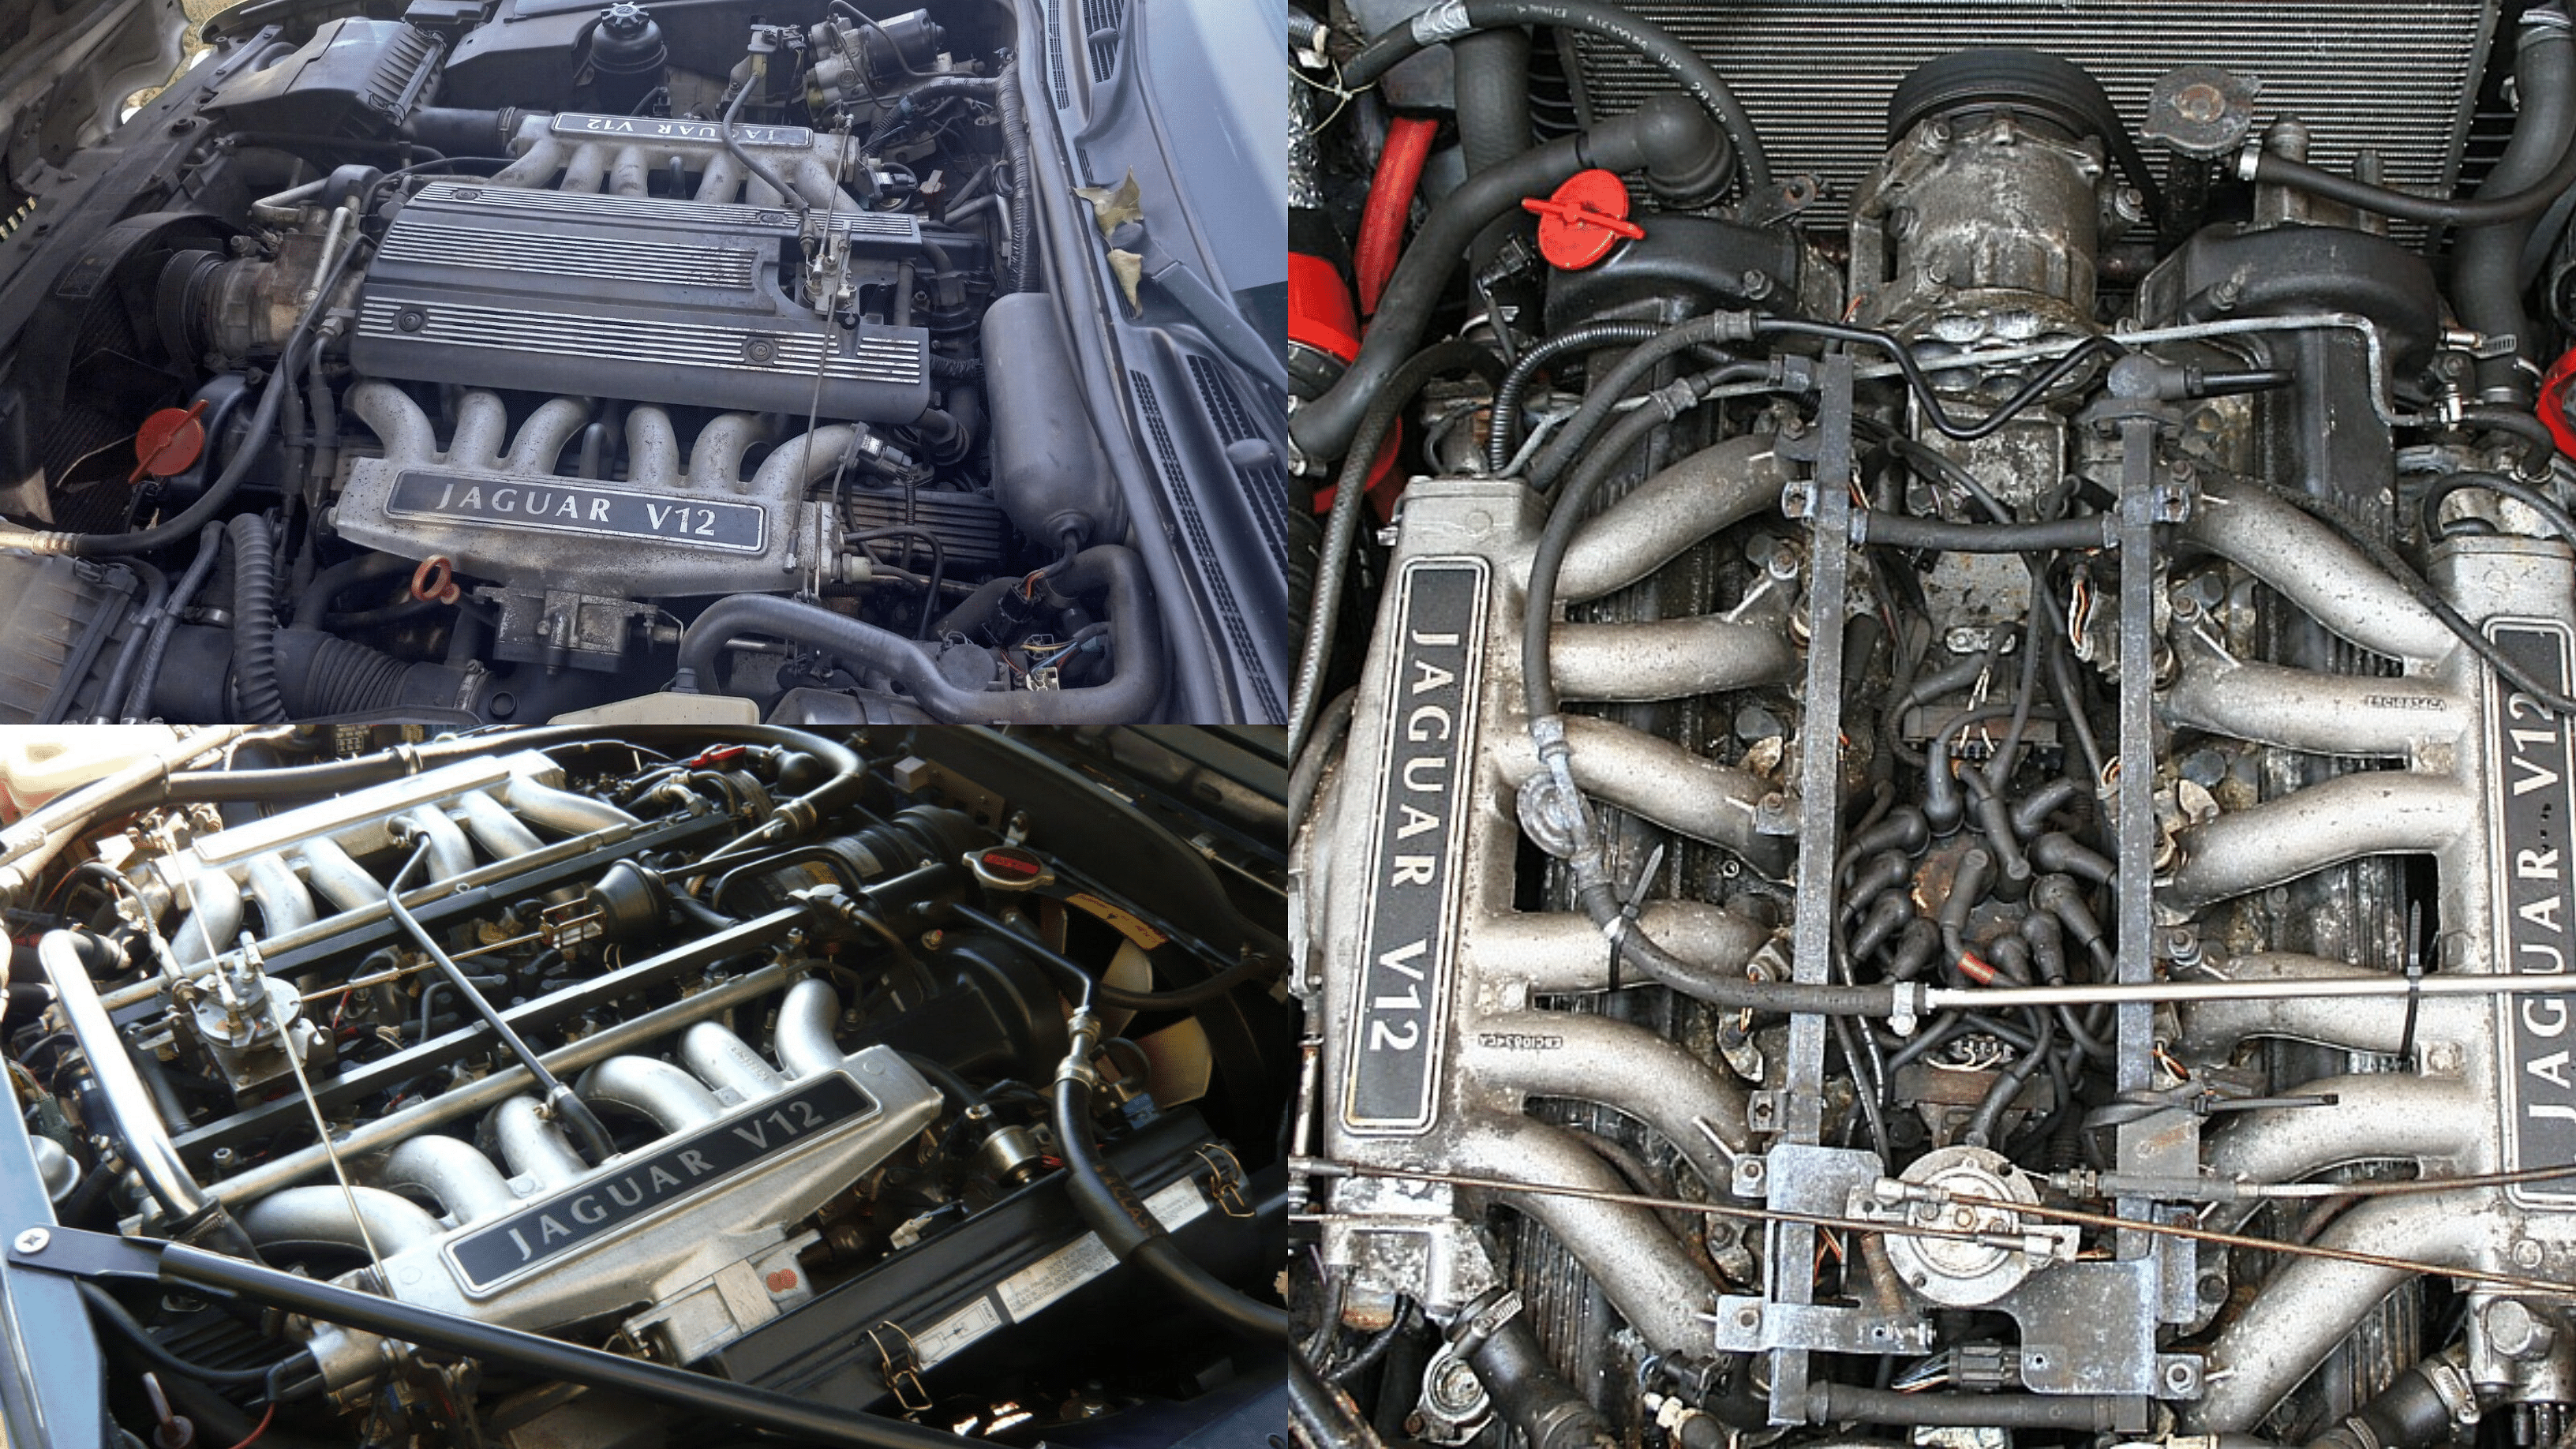 Jaguar XJS Engine - Jaguar V12 engine